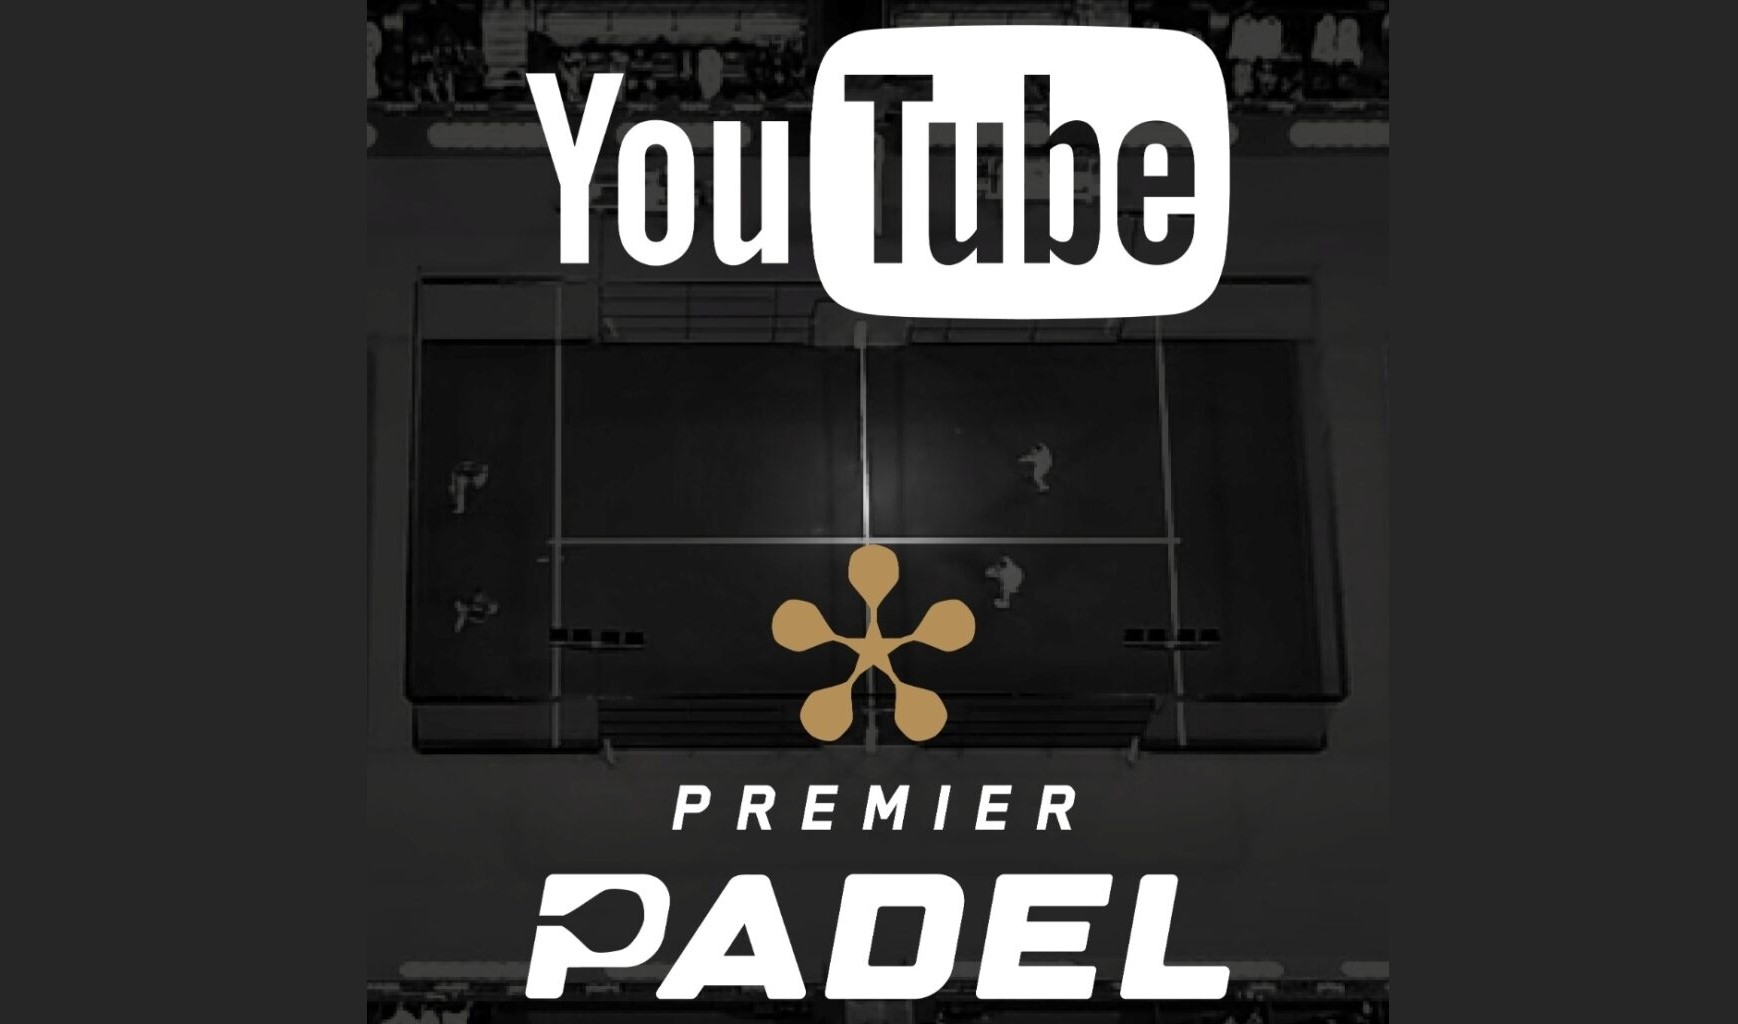 Premier Padel andato in onda su Youtube in Spagna